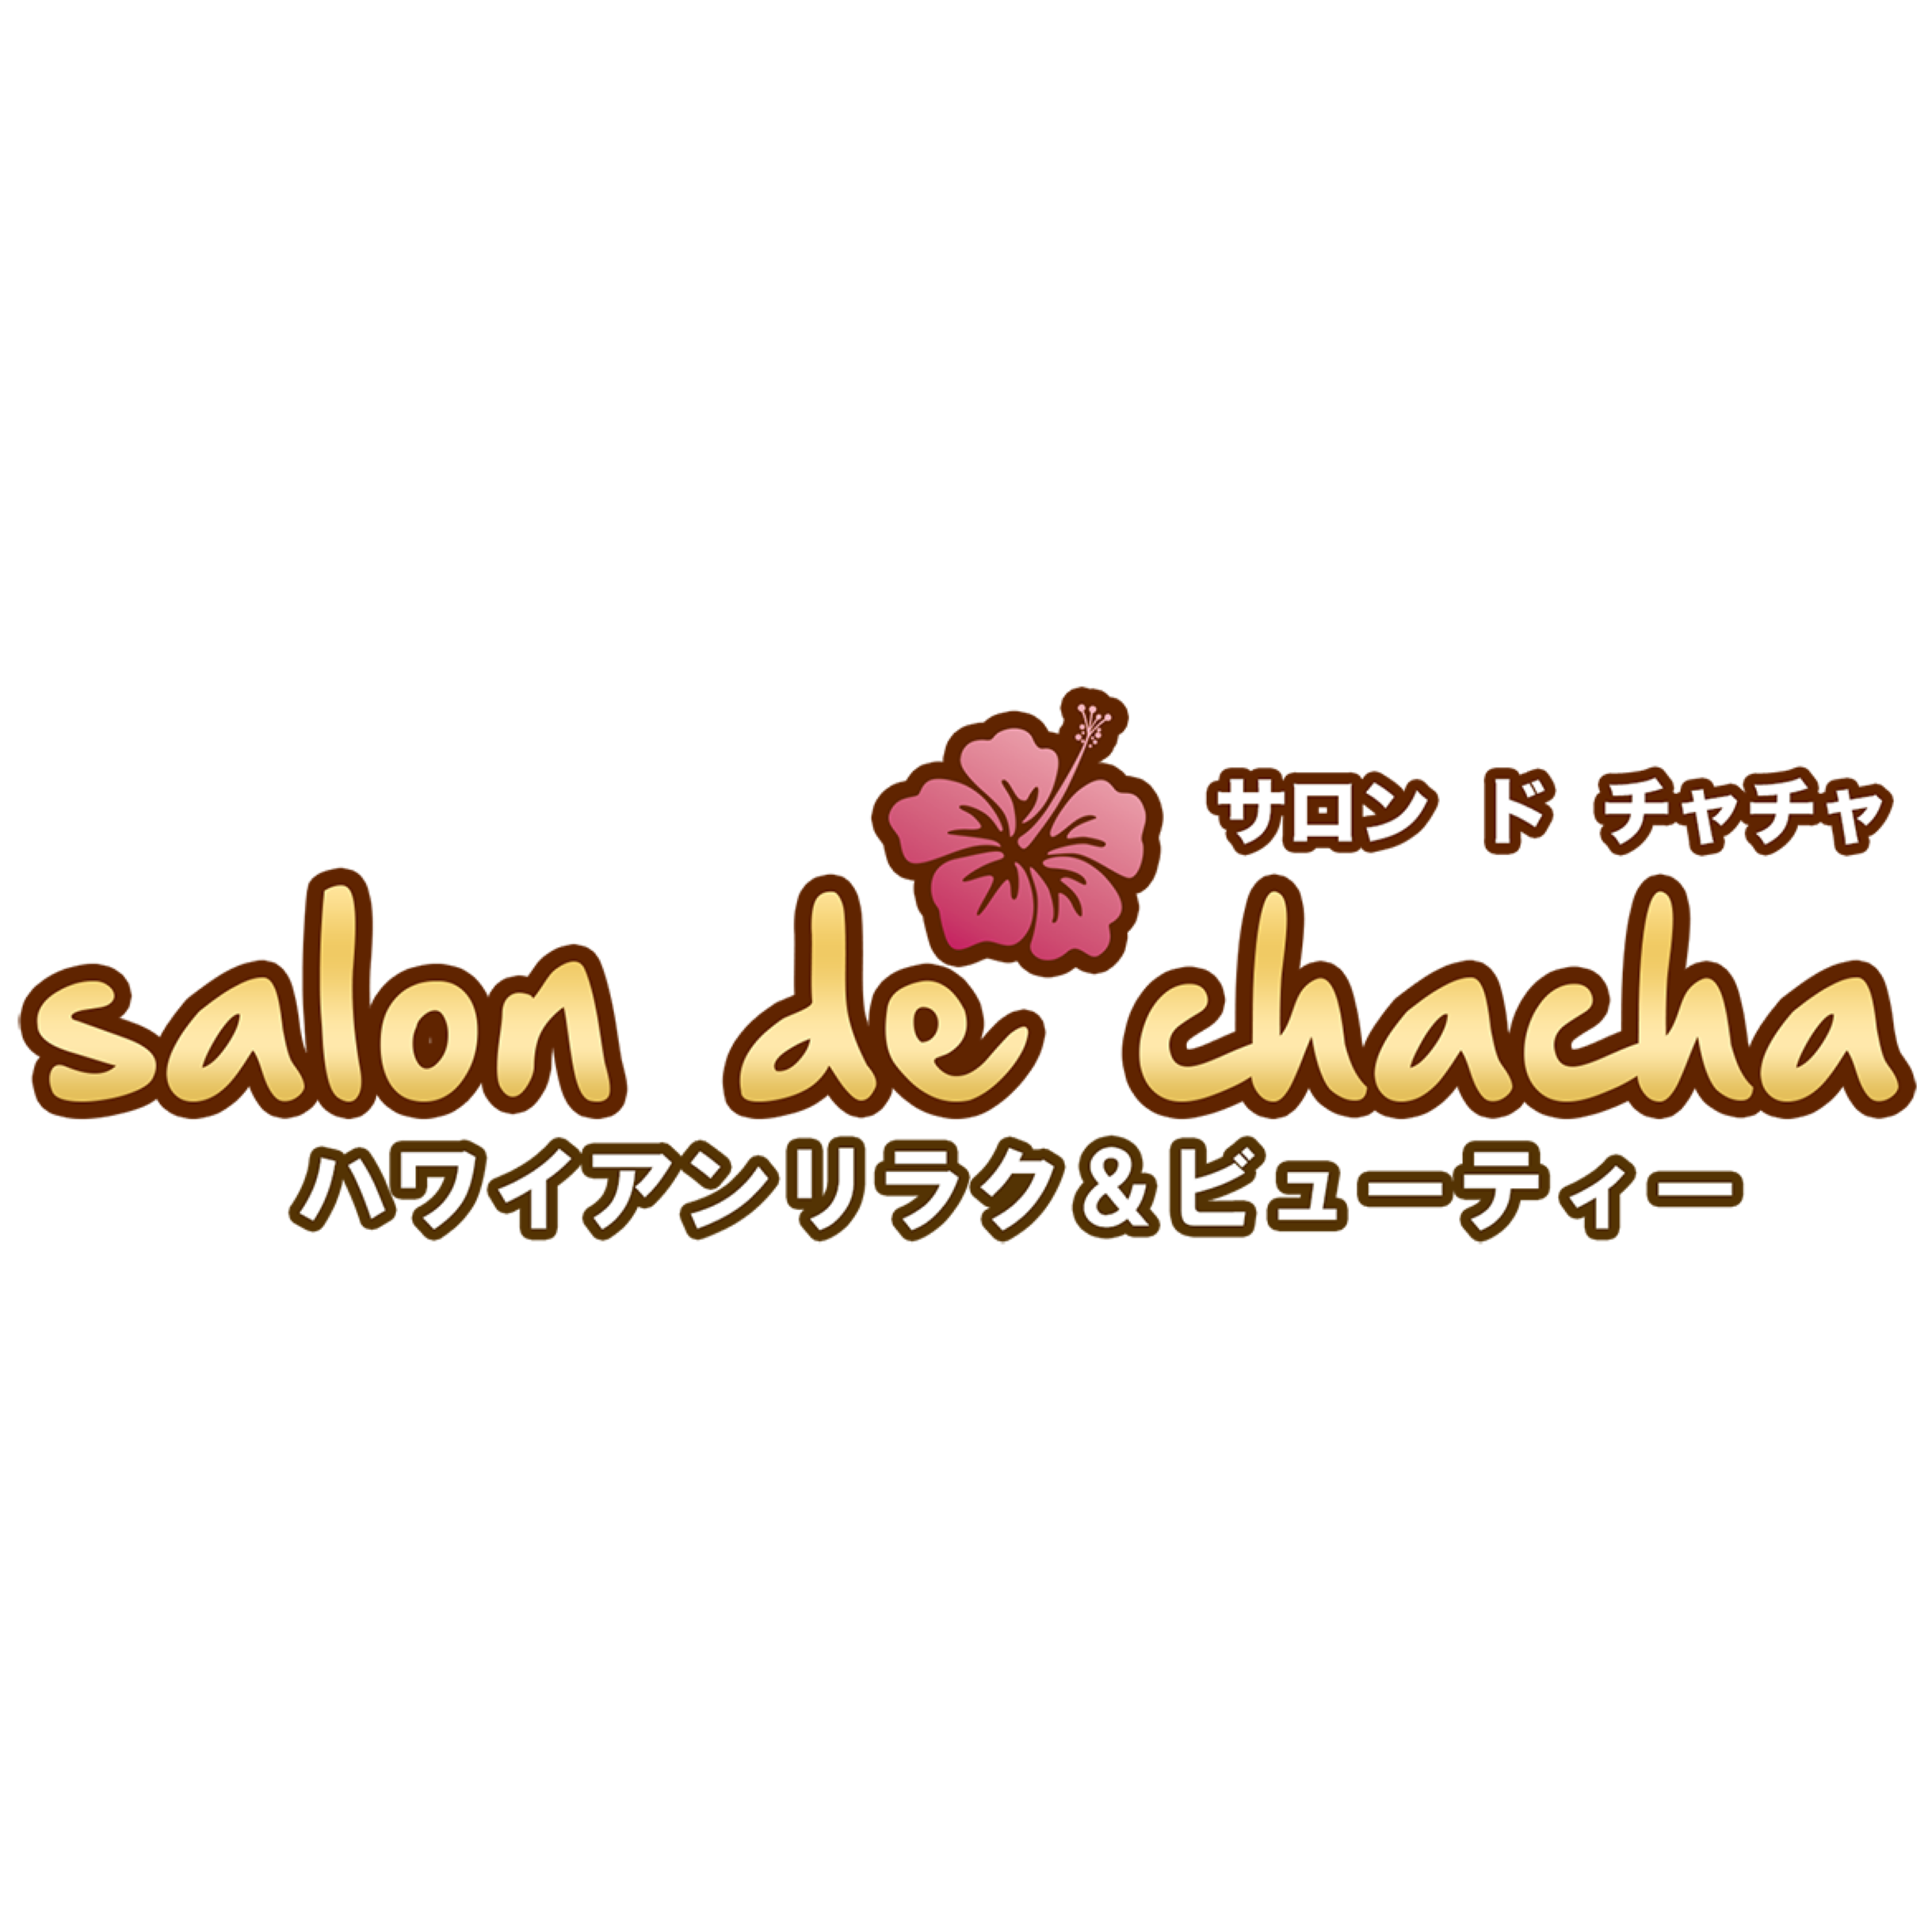 Salon de chacha みらい平店〜ハワイアンリラク＆ビューティー〜 Logo